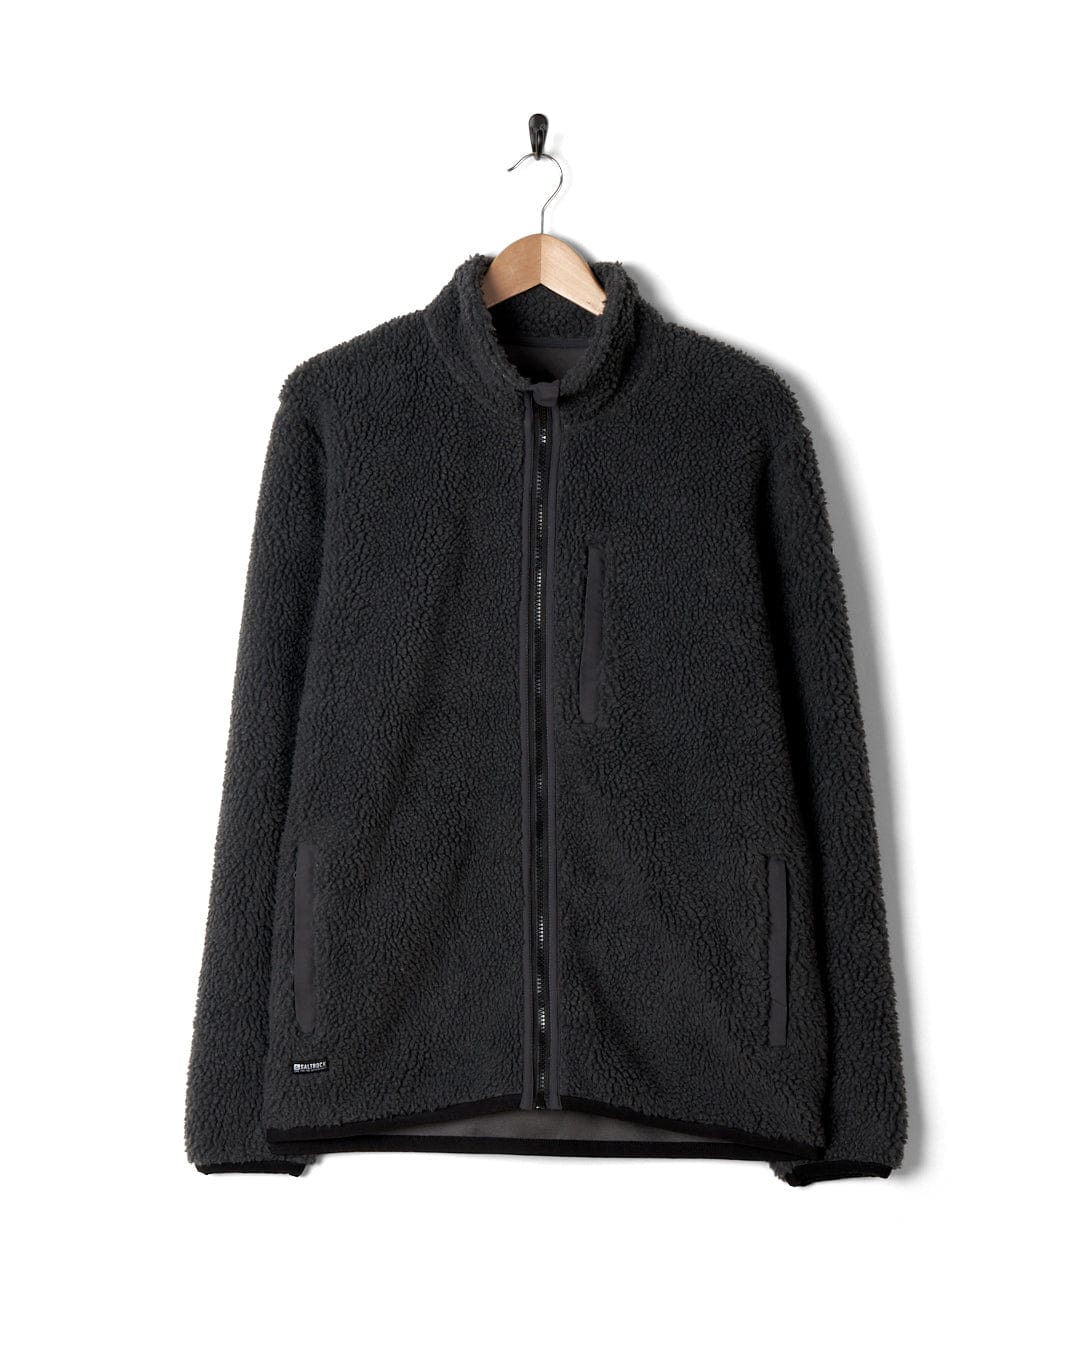 A black jacket with Saltrock branding on a Wye - Mens Zip Sherpa Fleece - Dark Grey.